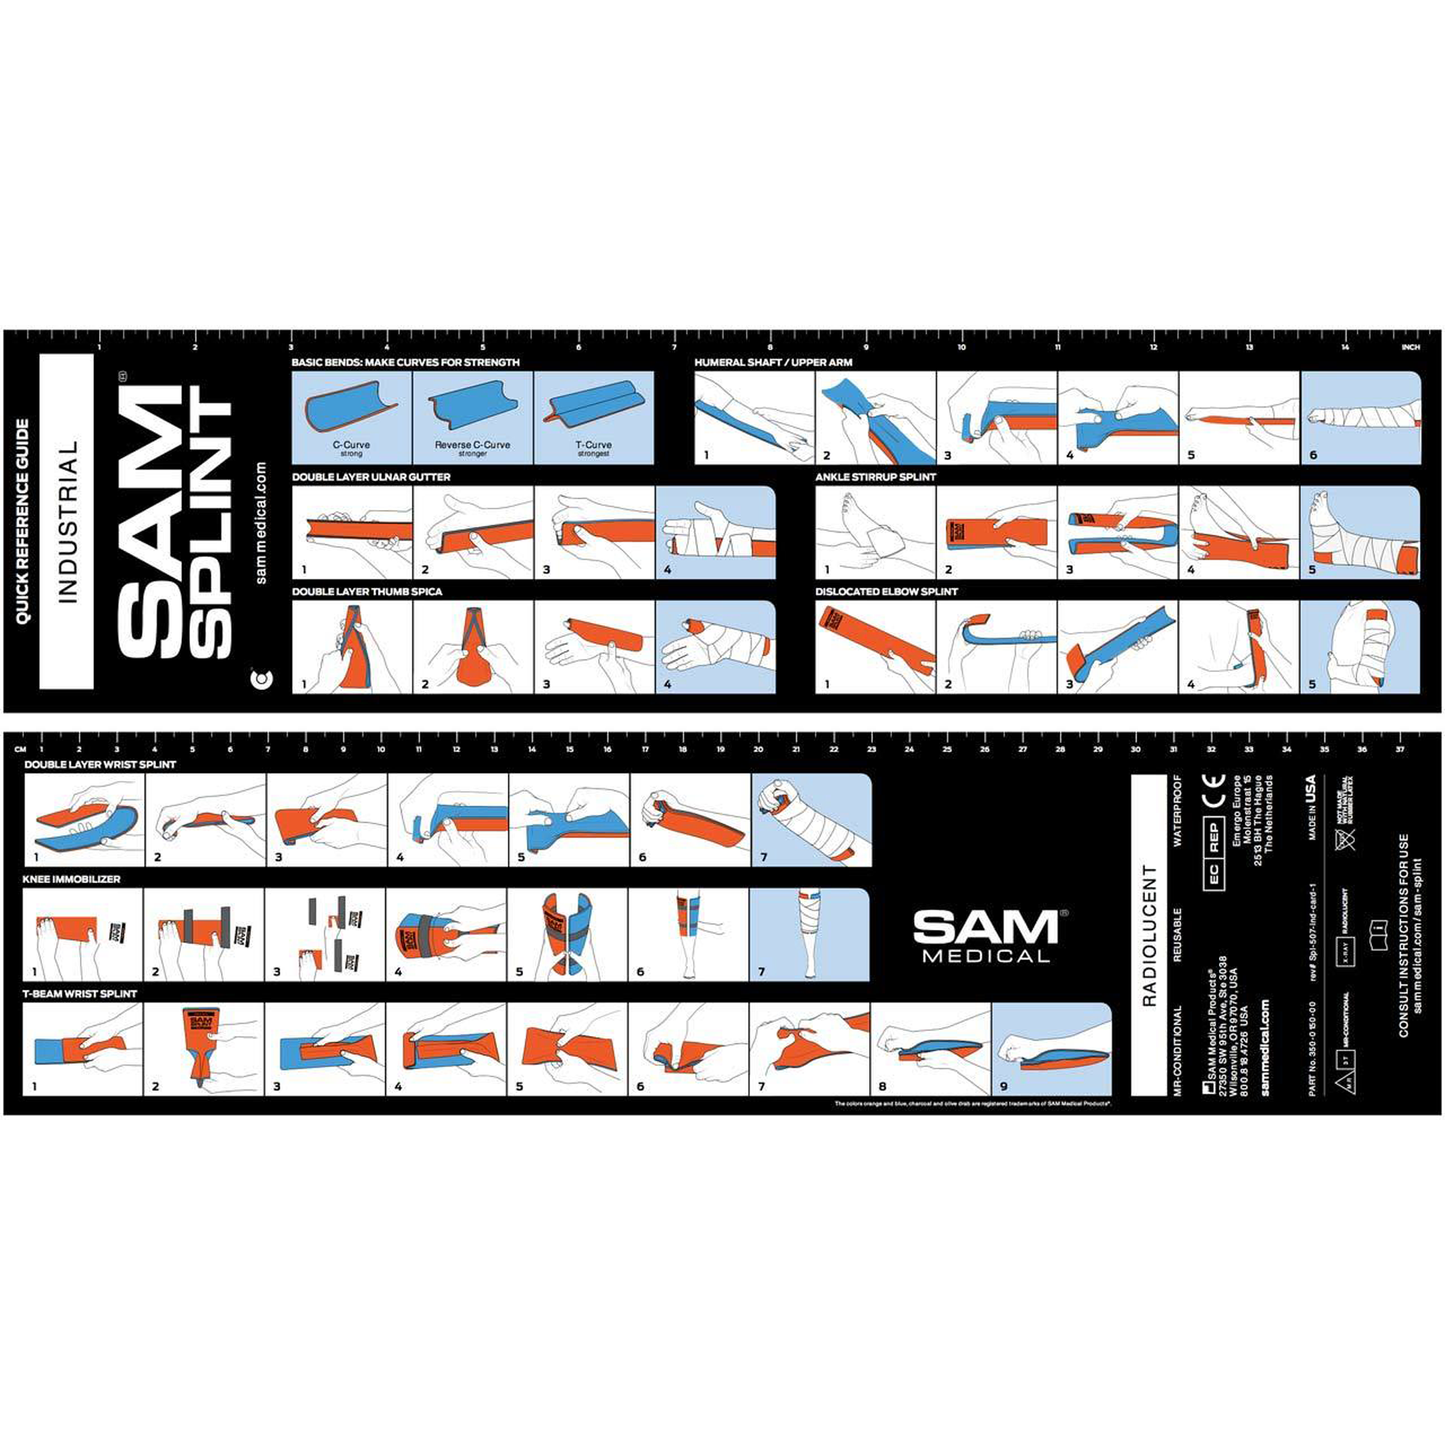 SAM® Splint 36" 91.4cm x 14cm XL - Charcoal